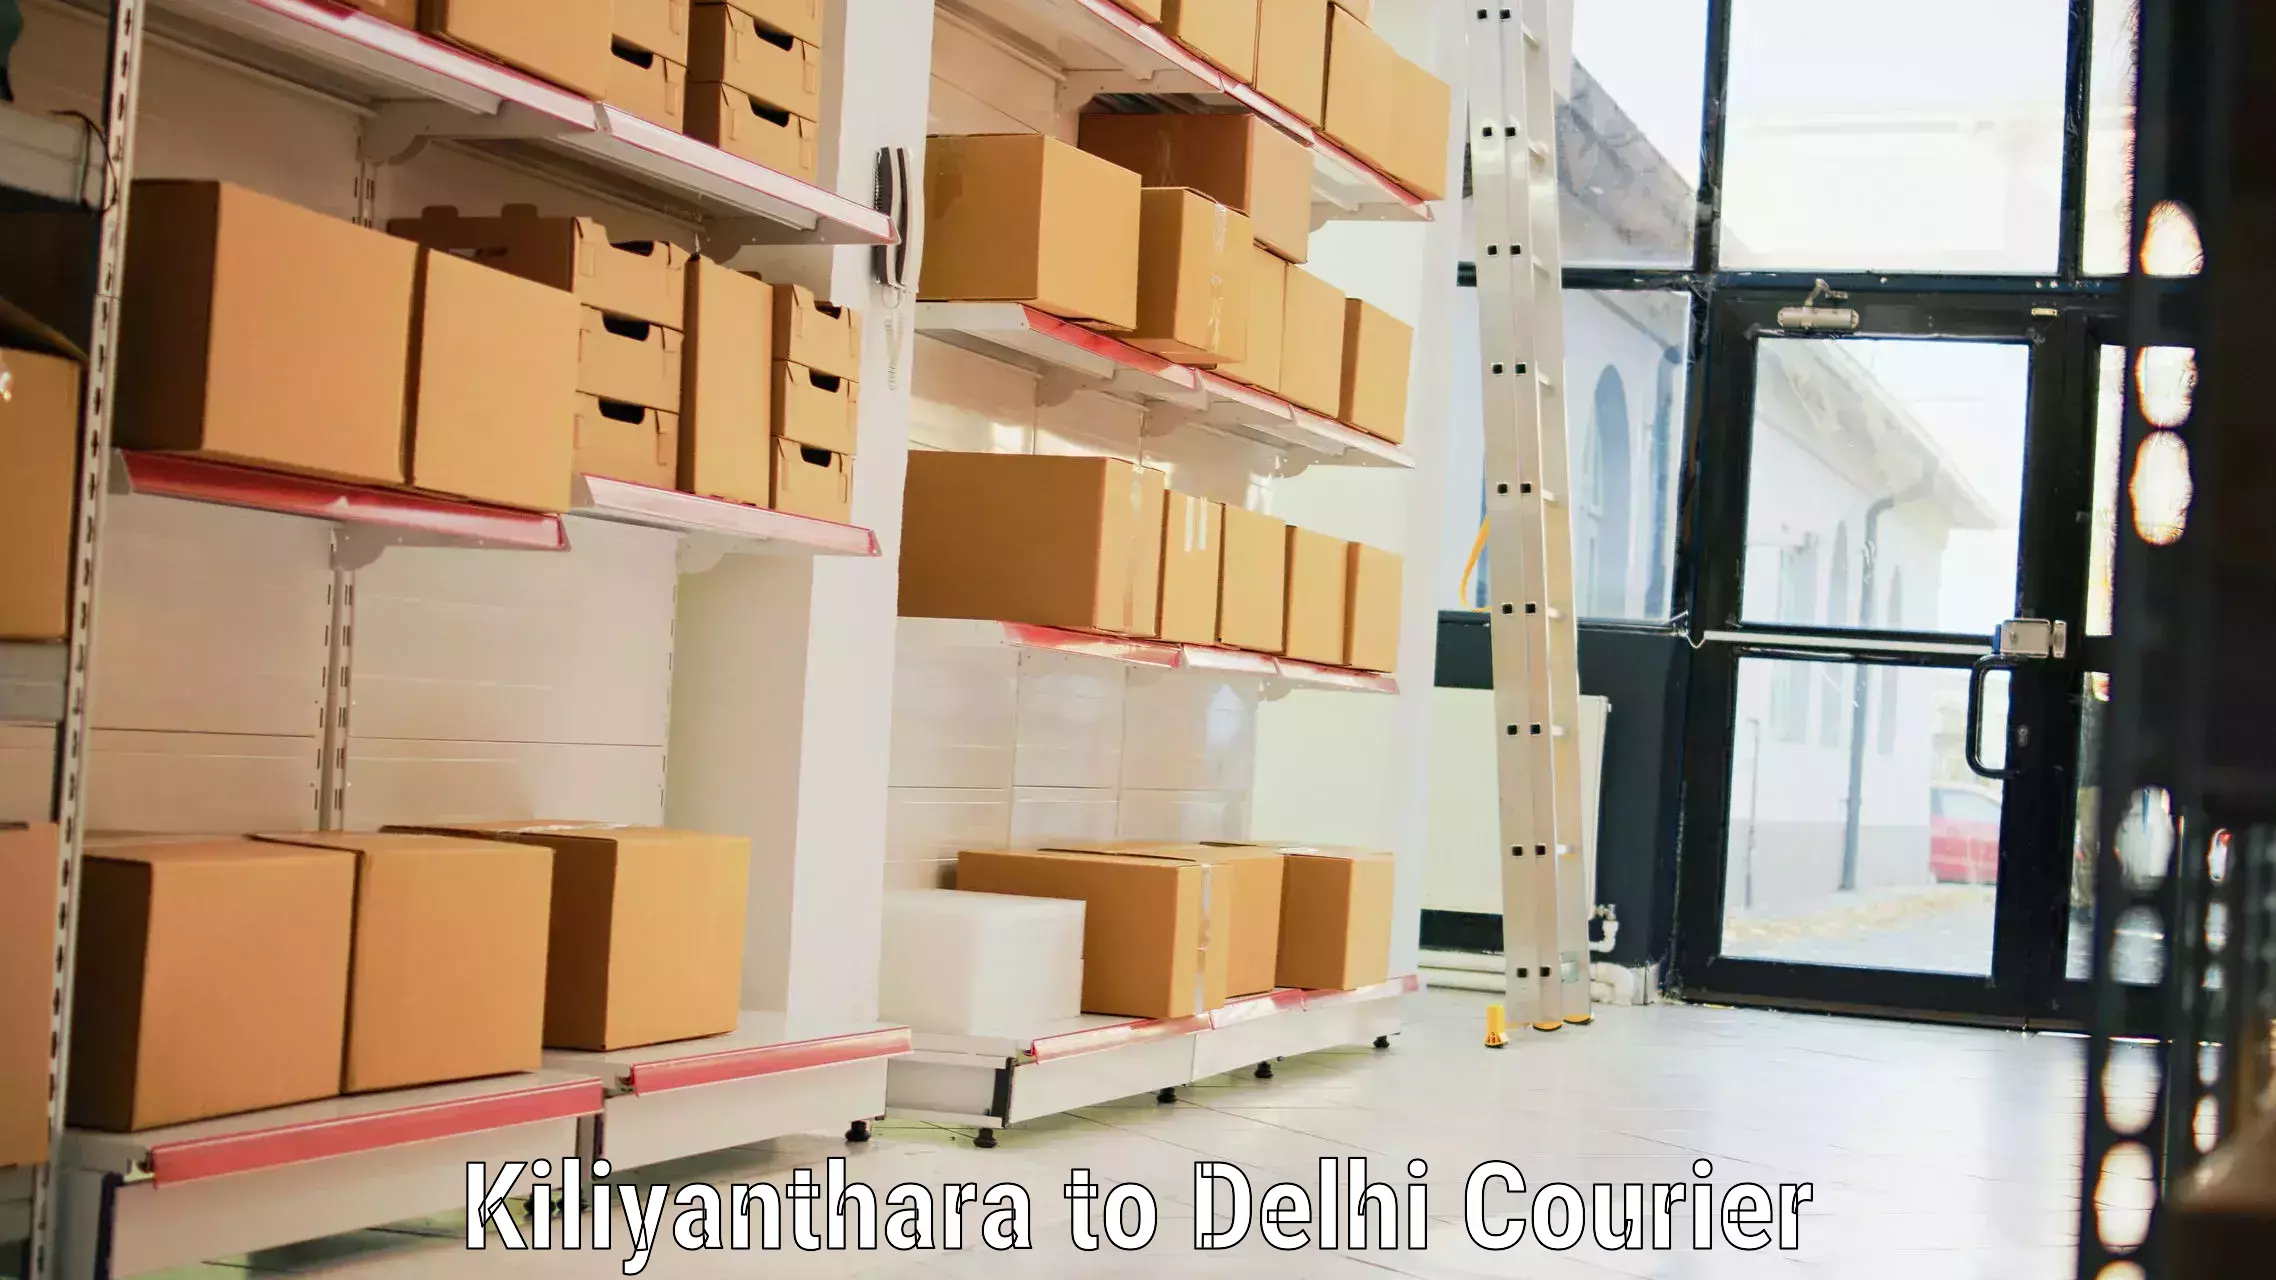 Luggage delivery logistics Kiliyanthara to Sansad Marg